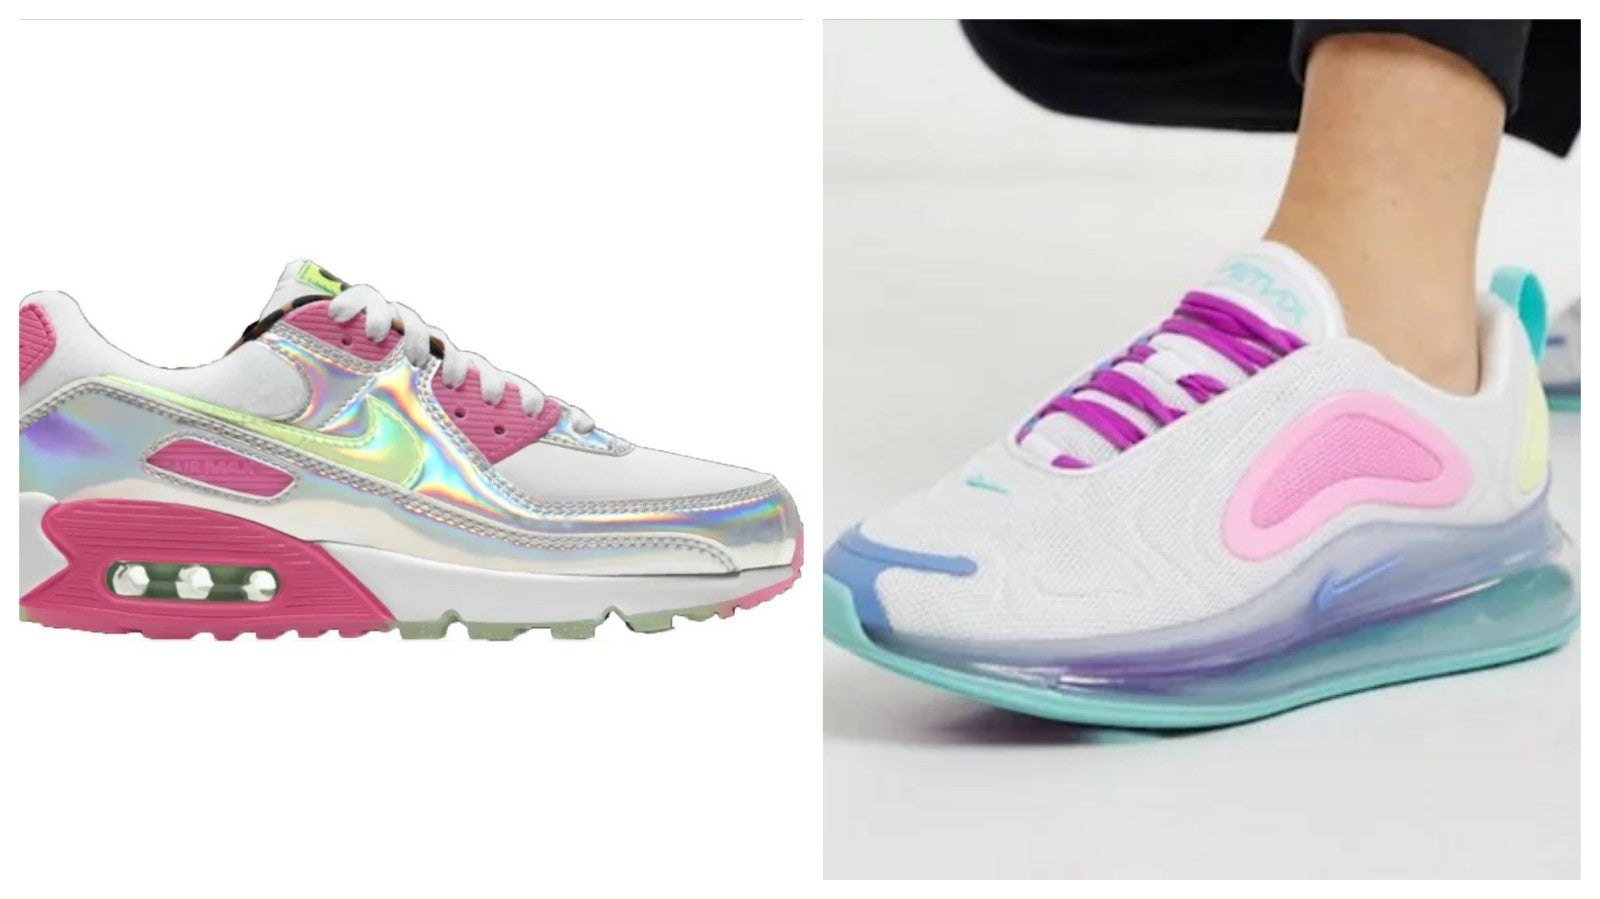 están regreso con las nuevas zapatillas iridiscentes de Nike